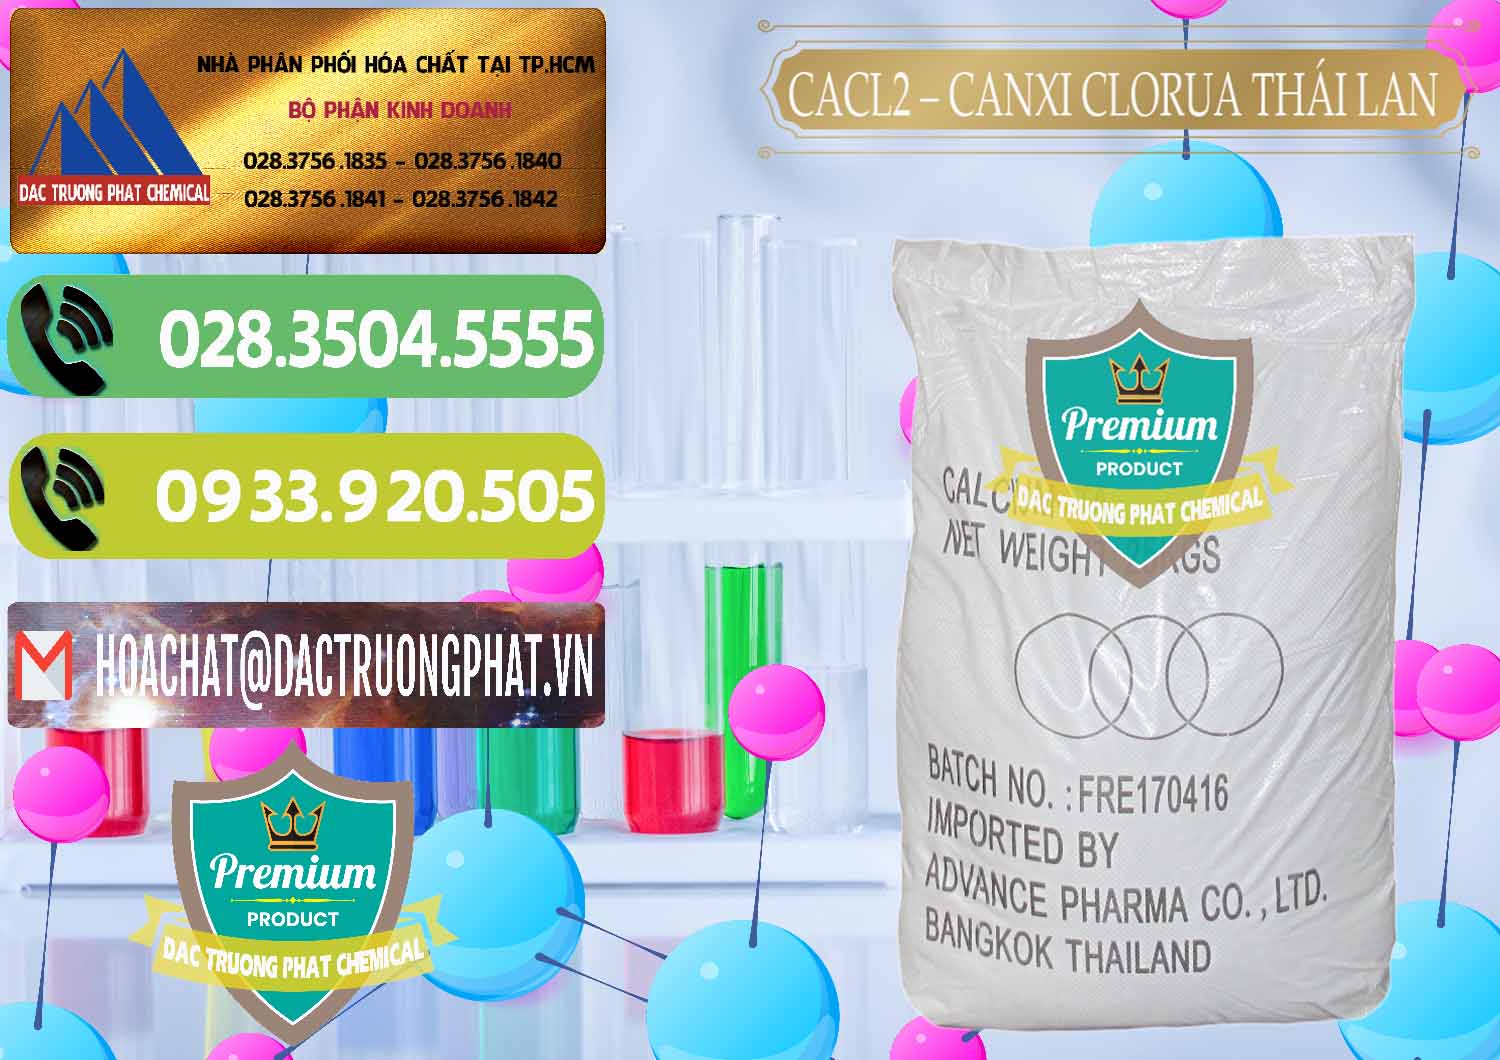 Công ty cung cấp và bán CaCl2 – Canxi Clorua 96% Thái Lan - 0042 - Nơi chuyên cung cấp _ bán hóa chất tại TP.HCM - hoachatmientay.vn